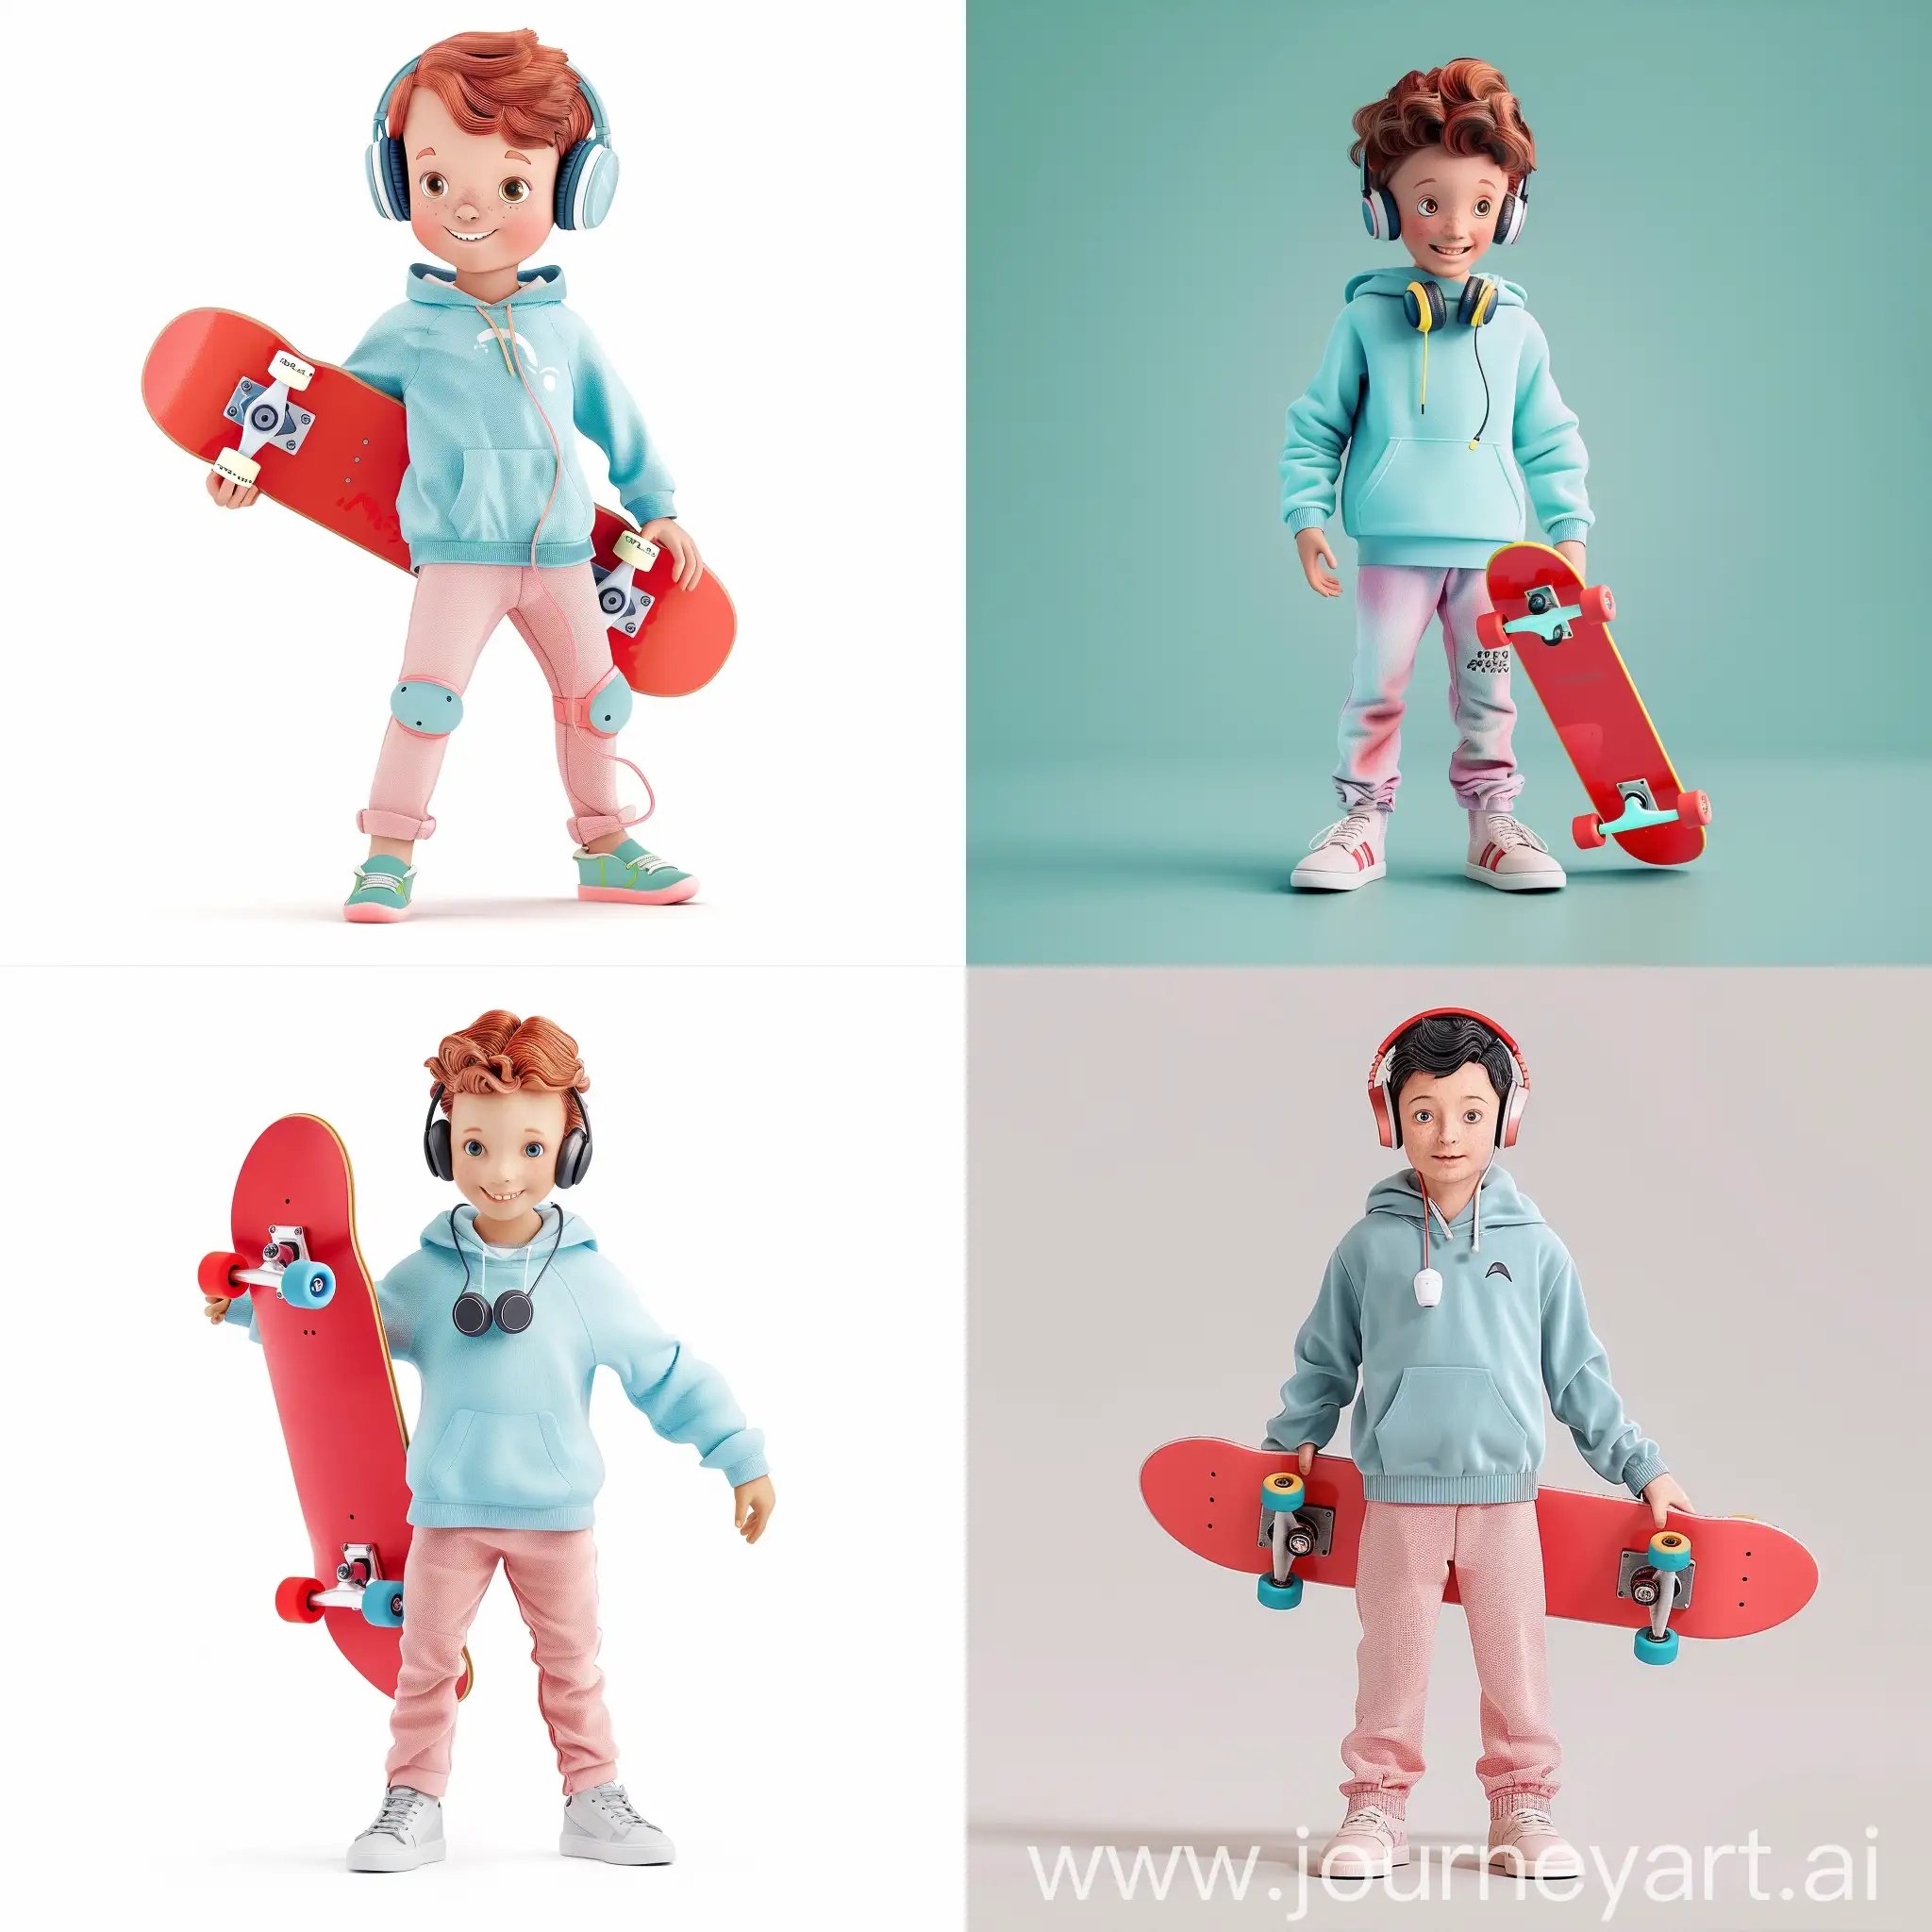 有活力的小男孩，脖子上挂着头戴式耳机，手撑着红色滑板，浅蓝色连帽外套，浅粉色裤子,动漫形象